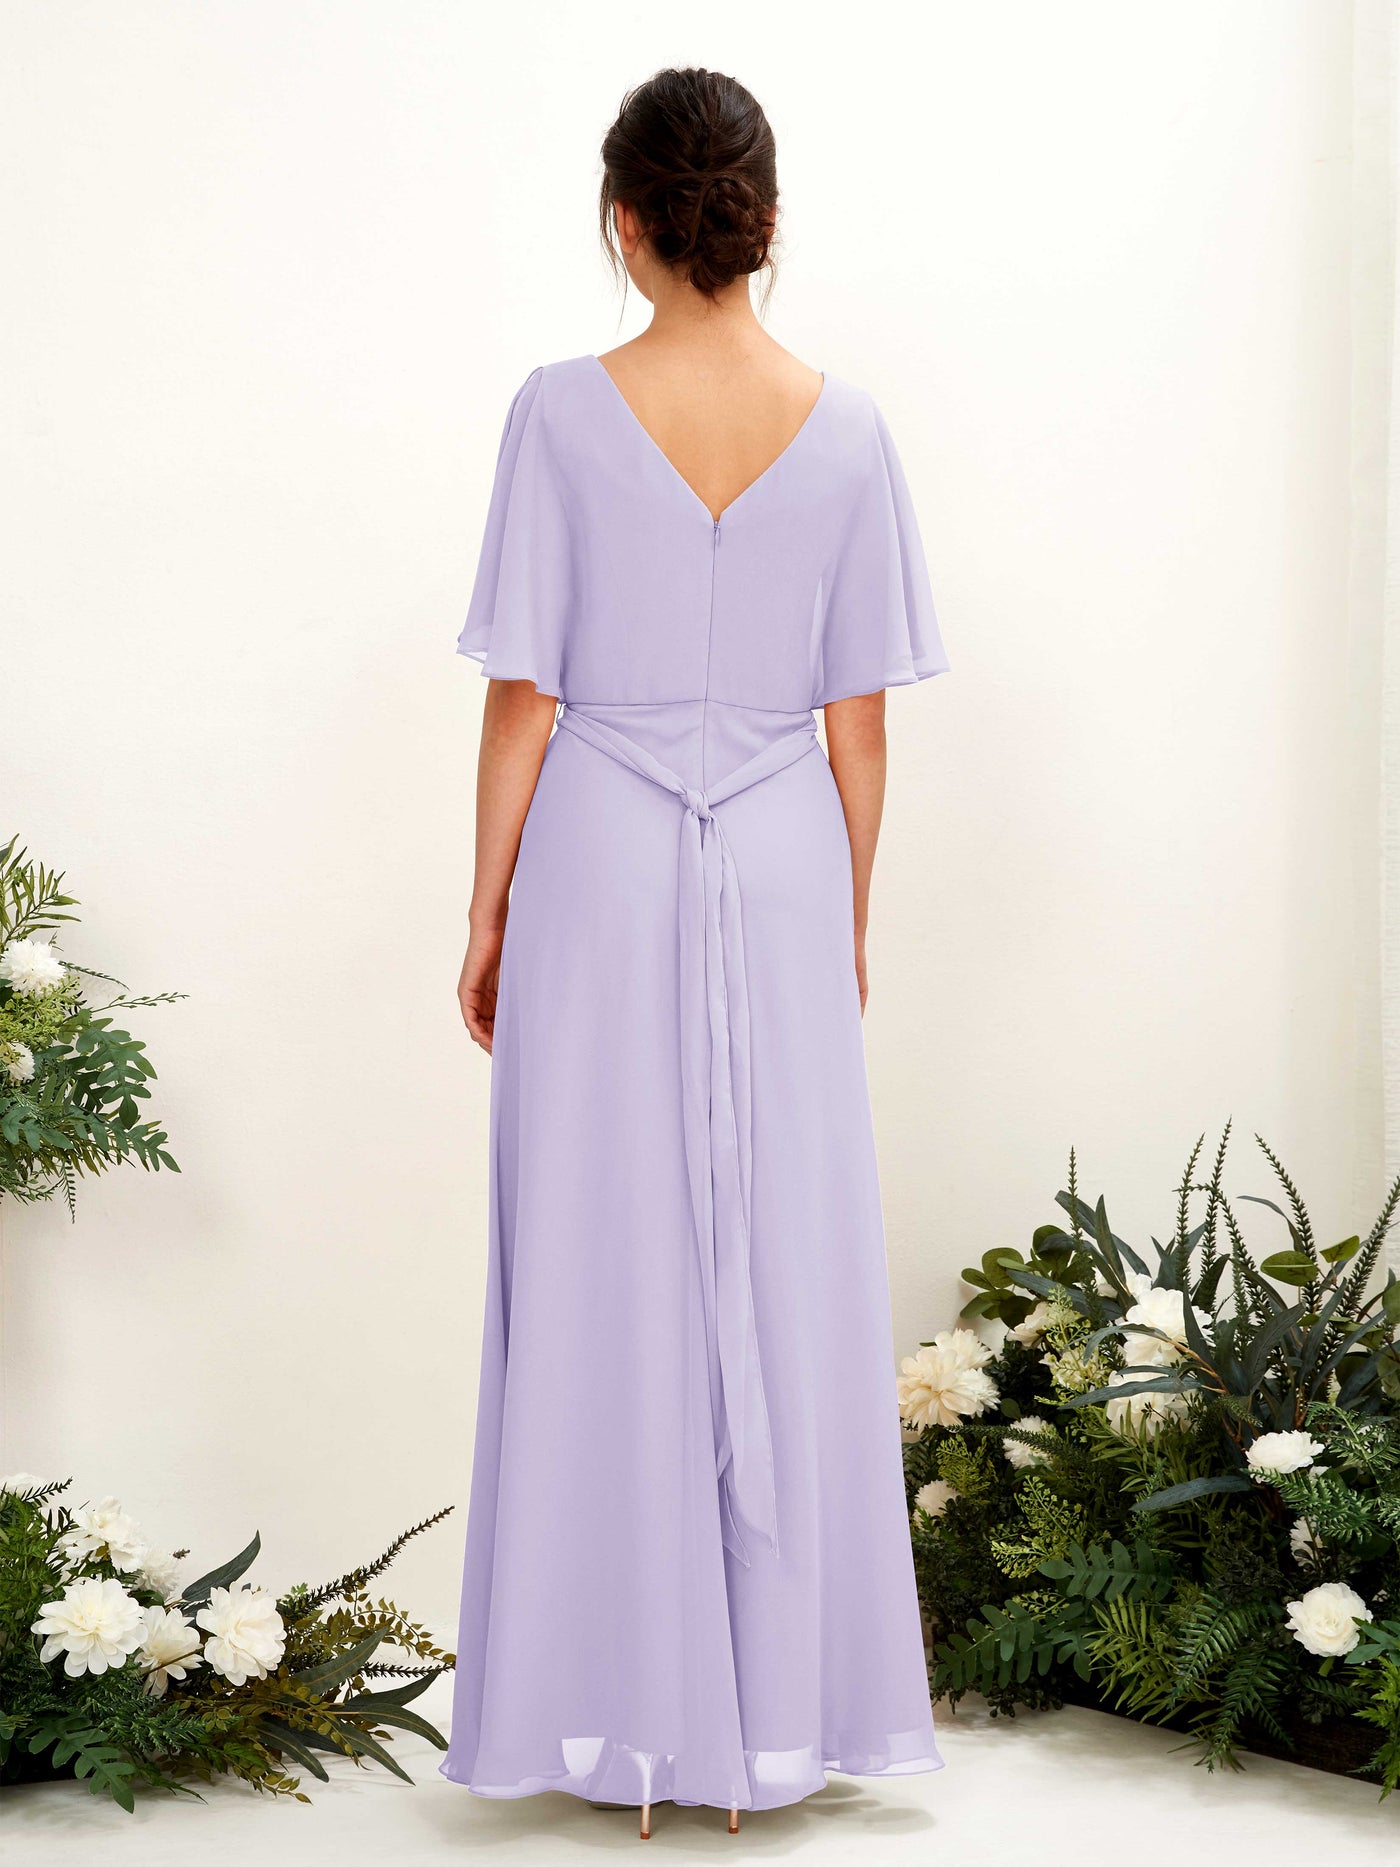 V-neck Short Sleeves Chiffon Bridesmaid Dress - Lilac (81222414)#color_lilac